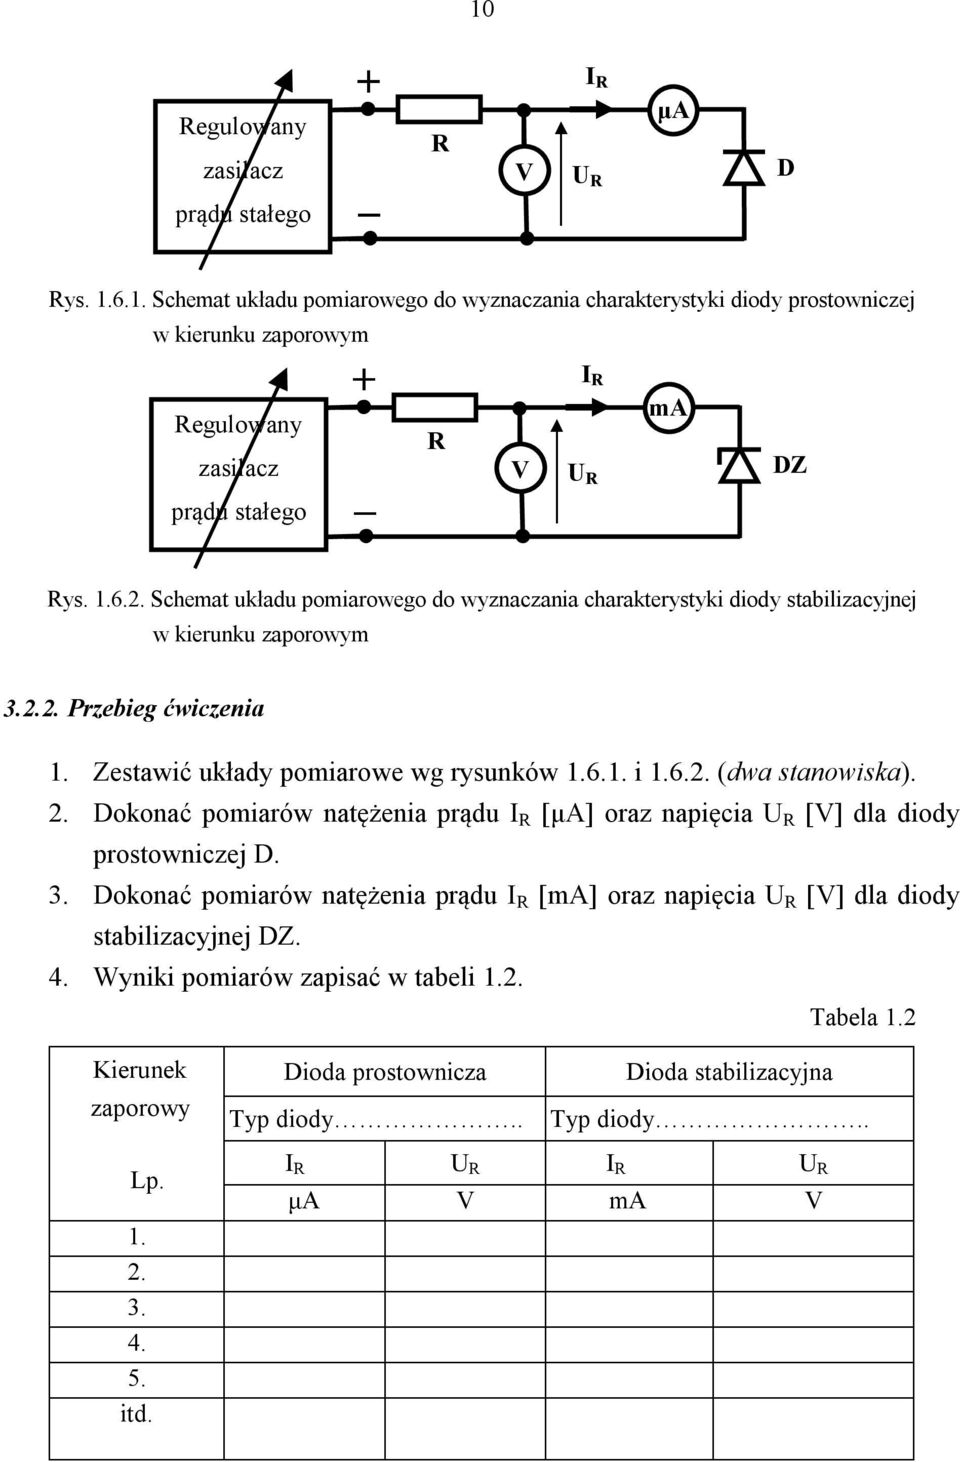 2. Dokonać pomiarów natężenia prądu I R [μa] oraz napięcia U R [V] dla diody prostowniczej D. 3. Dokonać pomiarów natężenia prądu I R [ma] oraz napięcia U R [V] dla diody stabilizacyjnej DZ. 4.